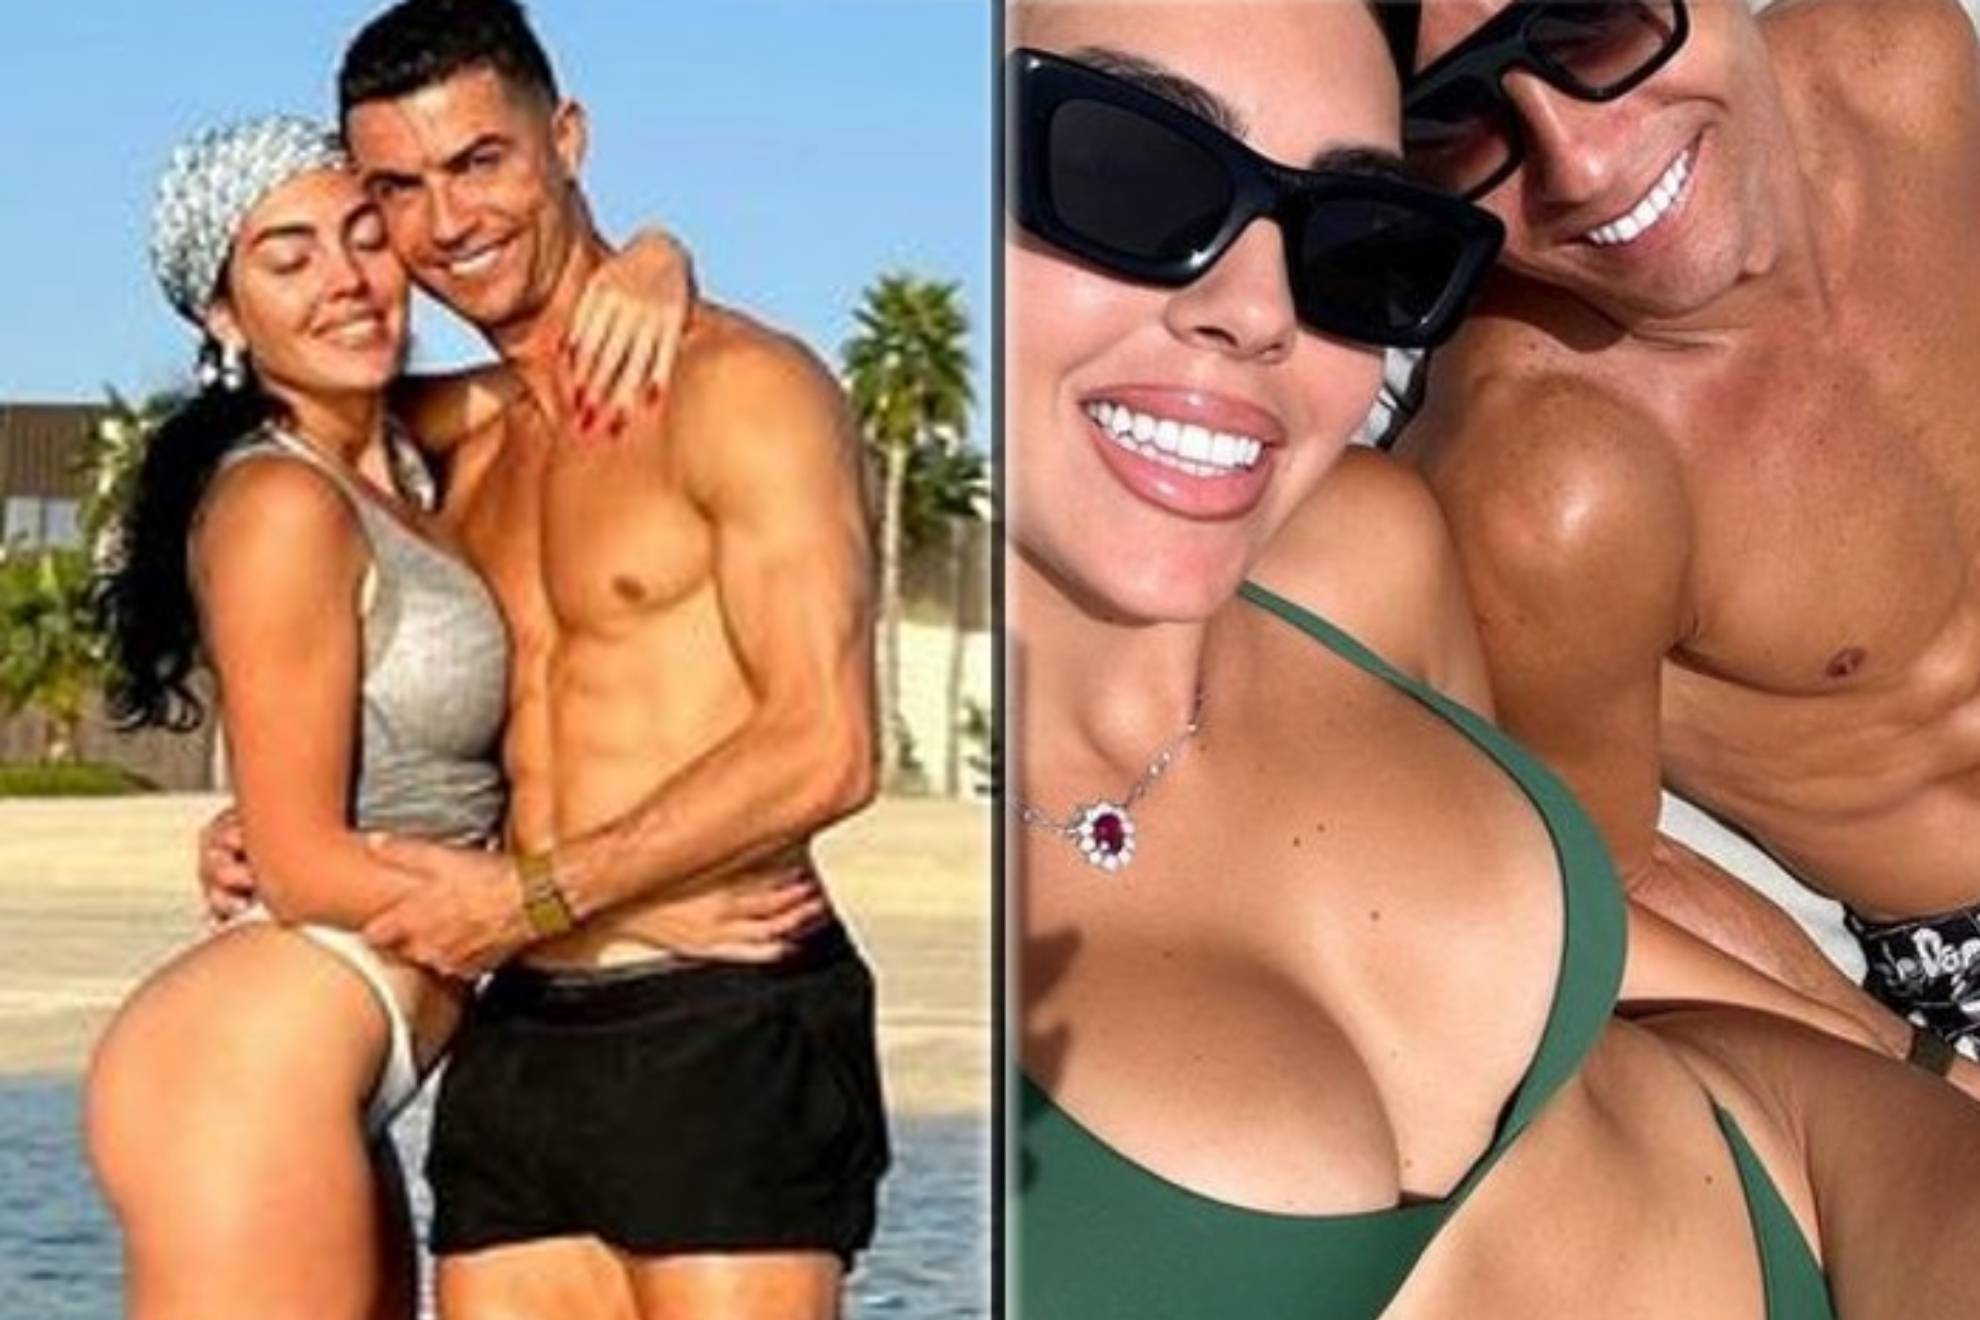 Cristiano Ronaldo (617 millones de seguidores) y Georgina Rodrguez 55,6 millones de segudiores) compartieron una declaracin de amor en sus respectivas cuentas de Instagram. Almas gemelas, escribi el futbolista portugus de 38 aos que juega en el  Al-Nassr F. C. publicando una foto en baador junto a Georgina.